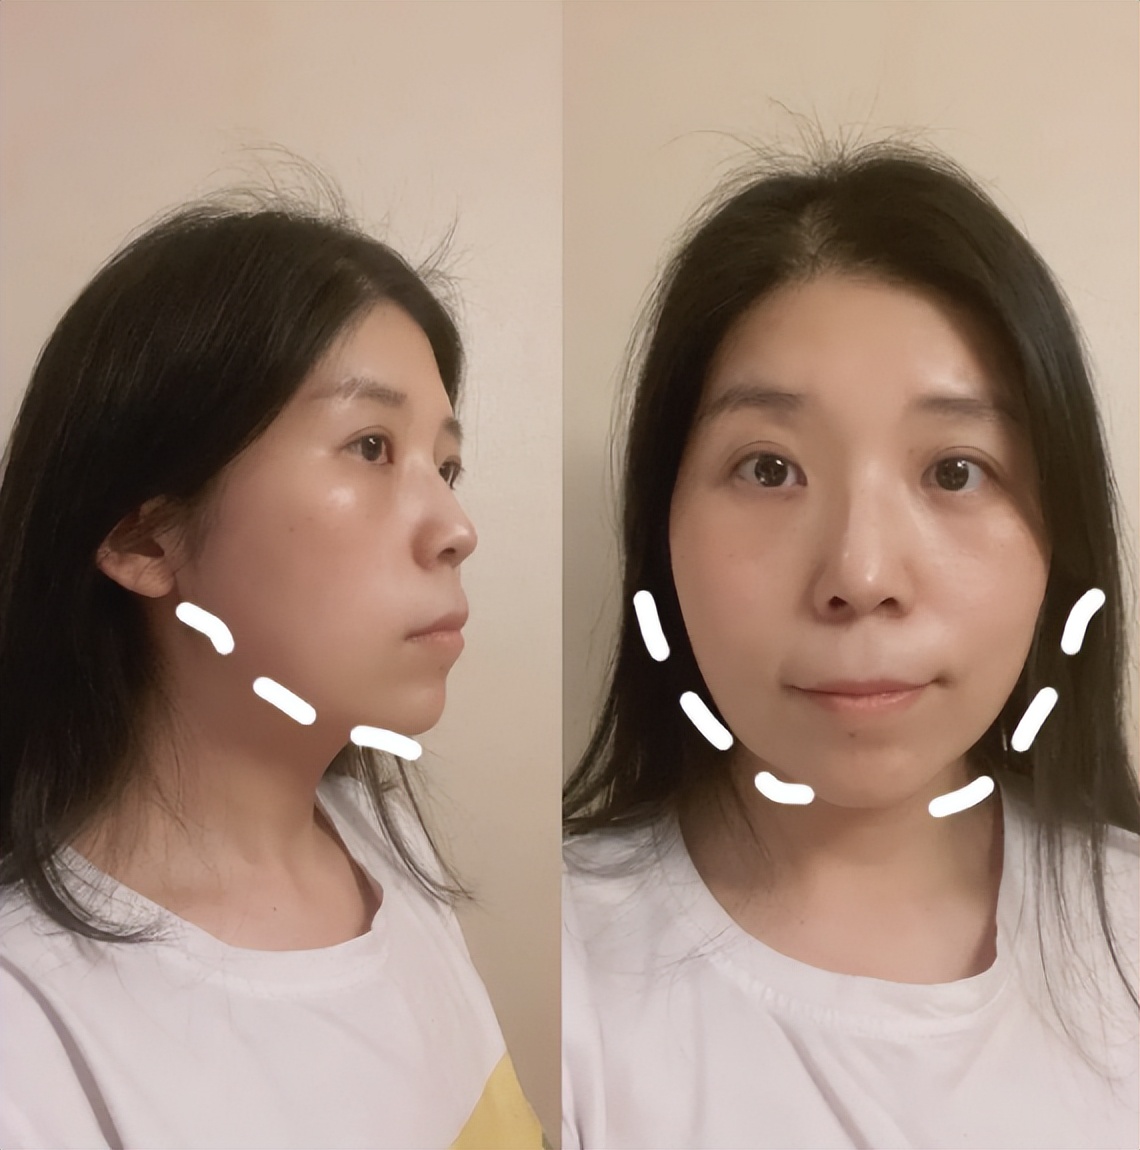 颈阔肌的提升,对于面部的改善有帮助,效果很明显